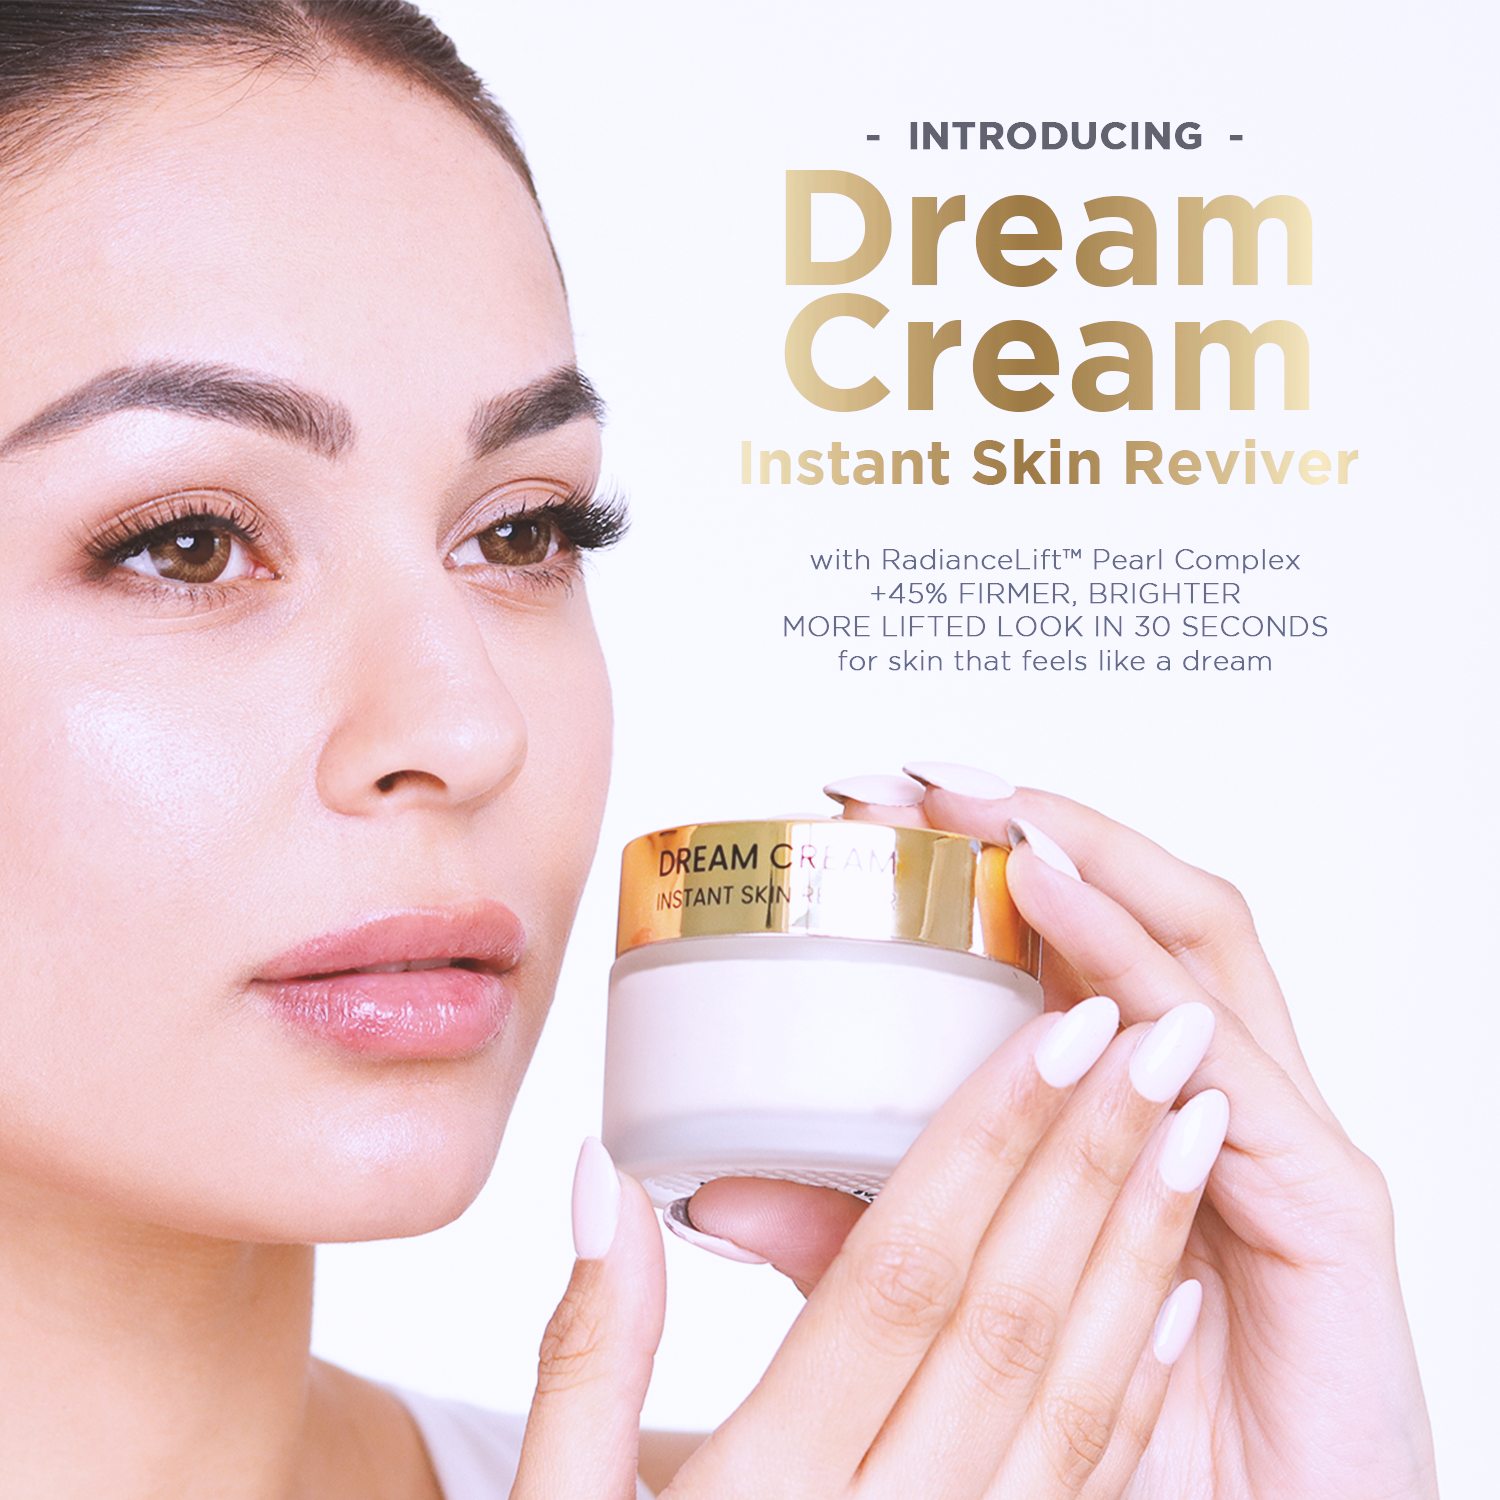 DREAM CREAM - Instant Skin Reviver